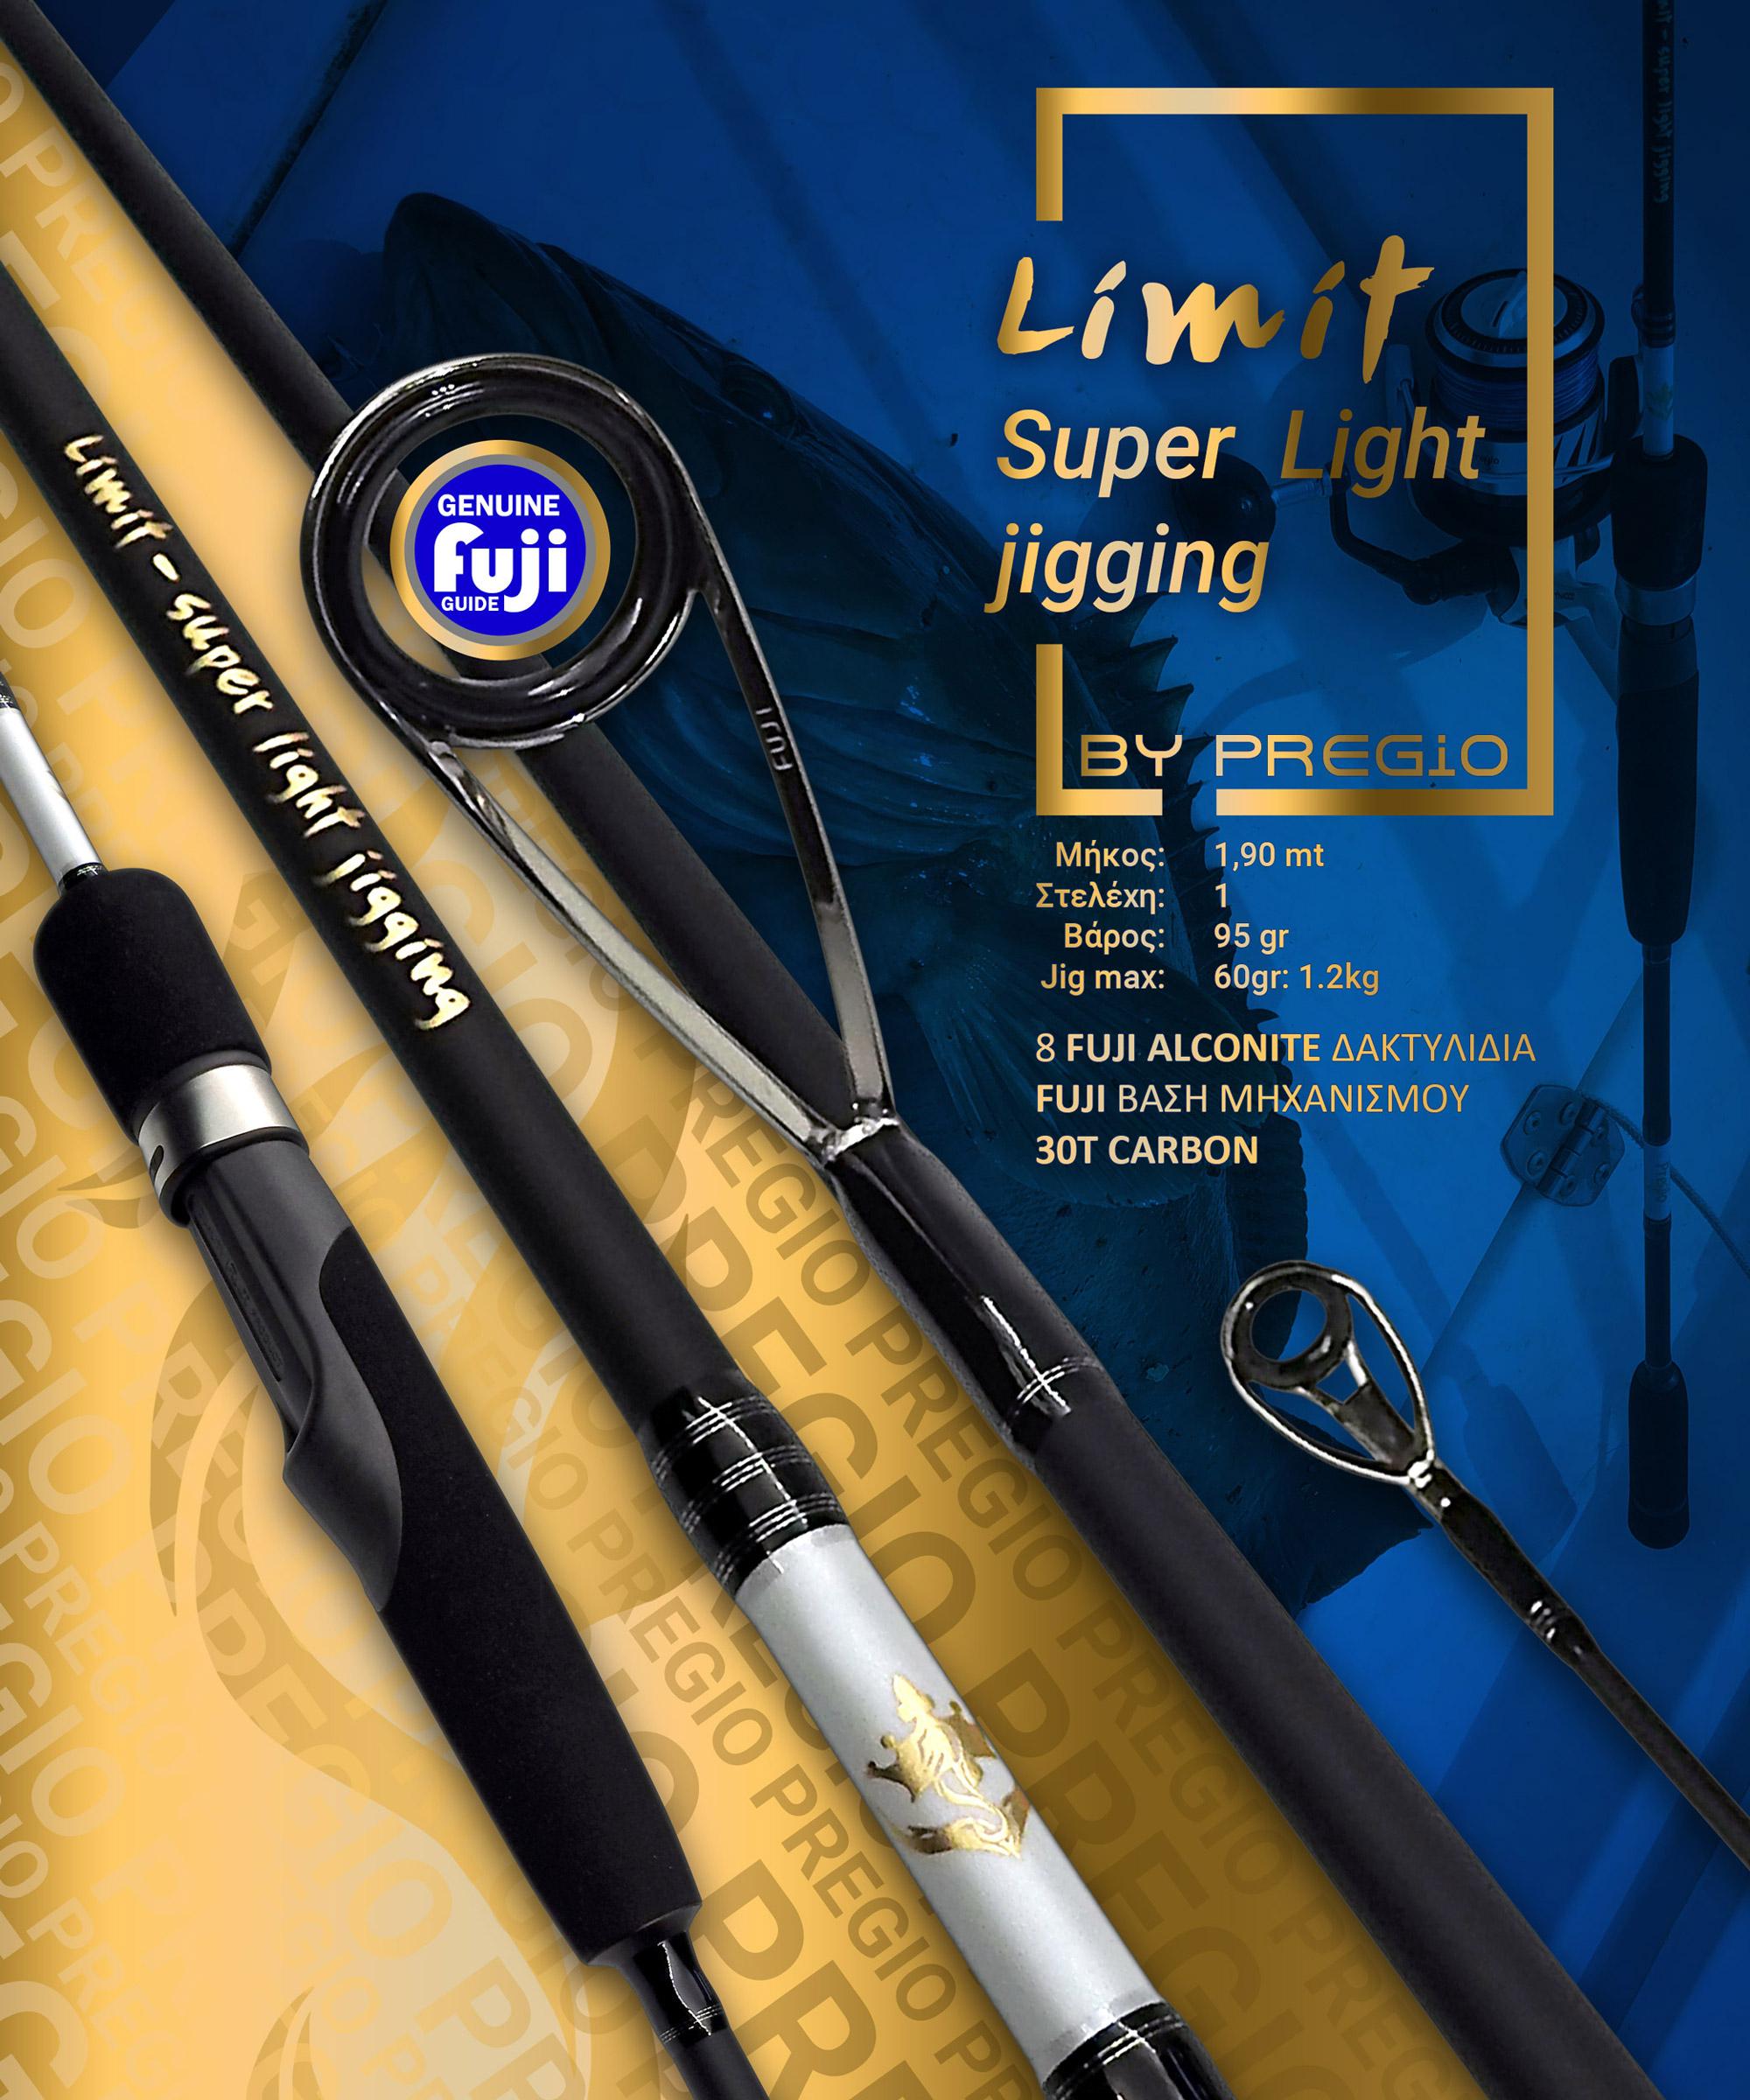 Fishing Rods - Fishing Rods for Boat - Fishing Rods for Light Jigging -  Fishing Rod Pregio Limit- Super Light jigging SLJ19-19160